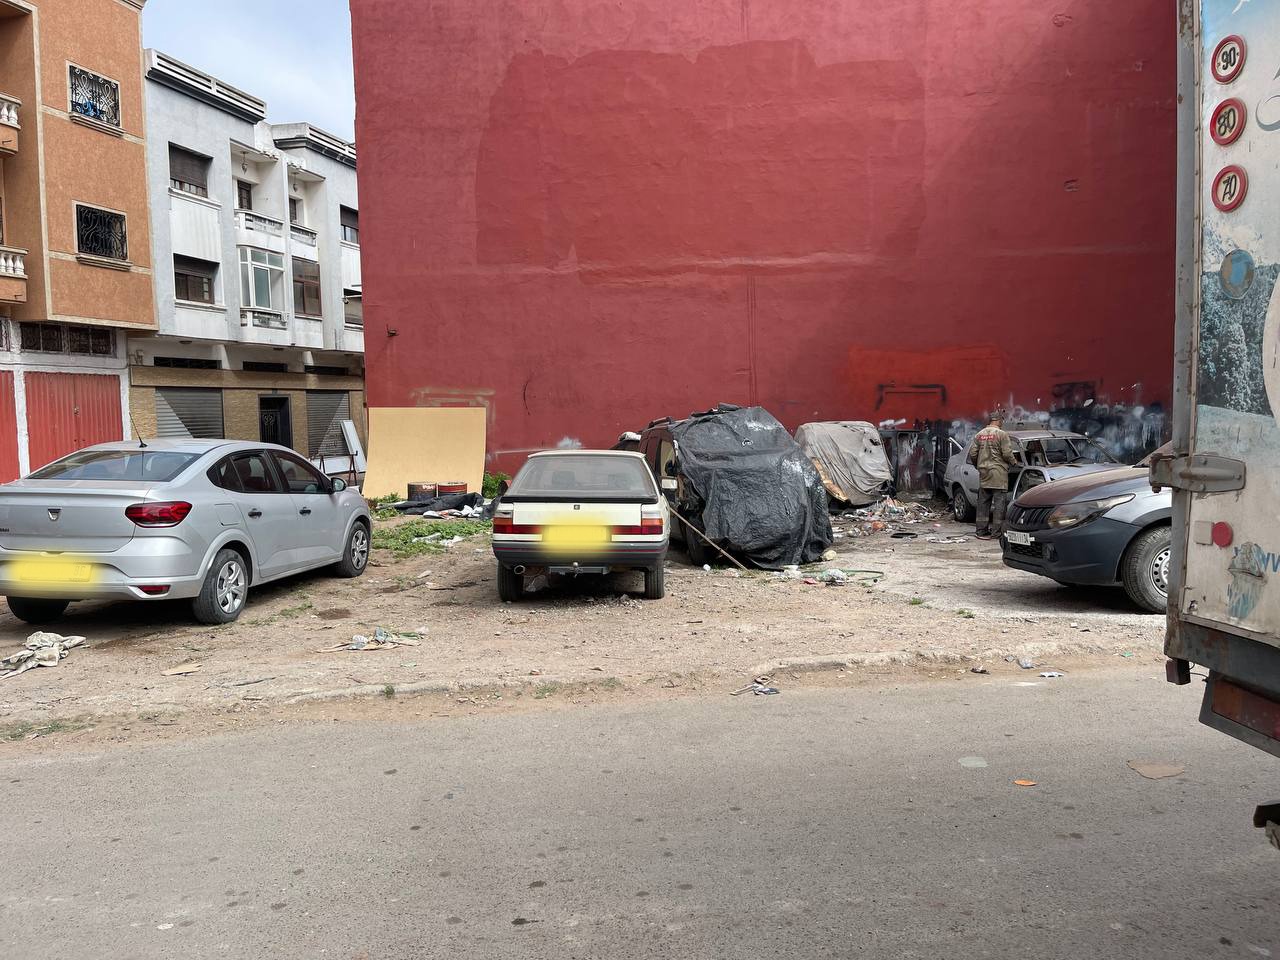 ٱليات وسيارات مهملة مهجورة مصدر قلق سكّان تجزئة جميلة بحيّ السلام بمدينة الجديدة